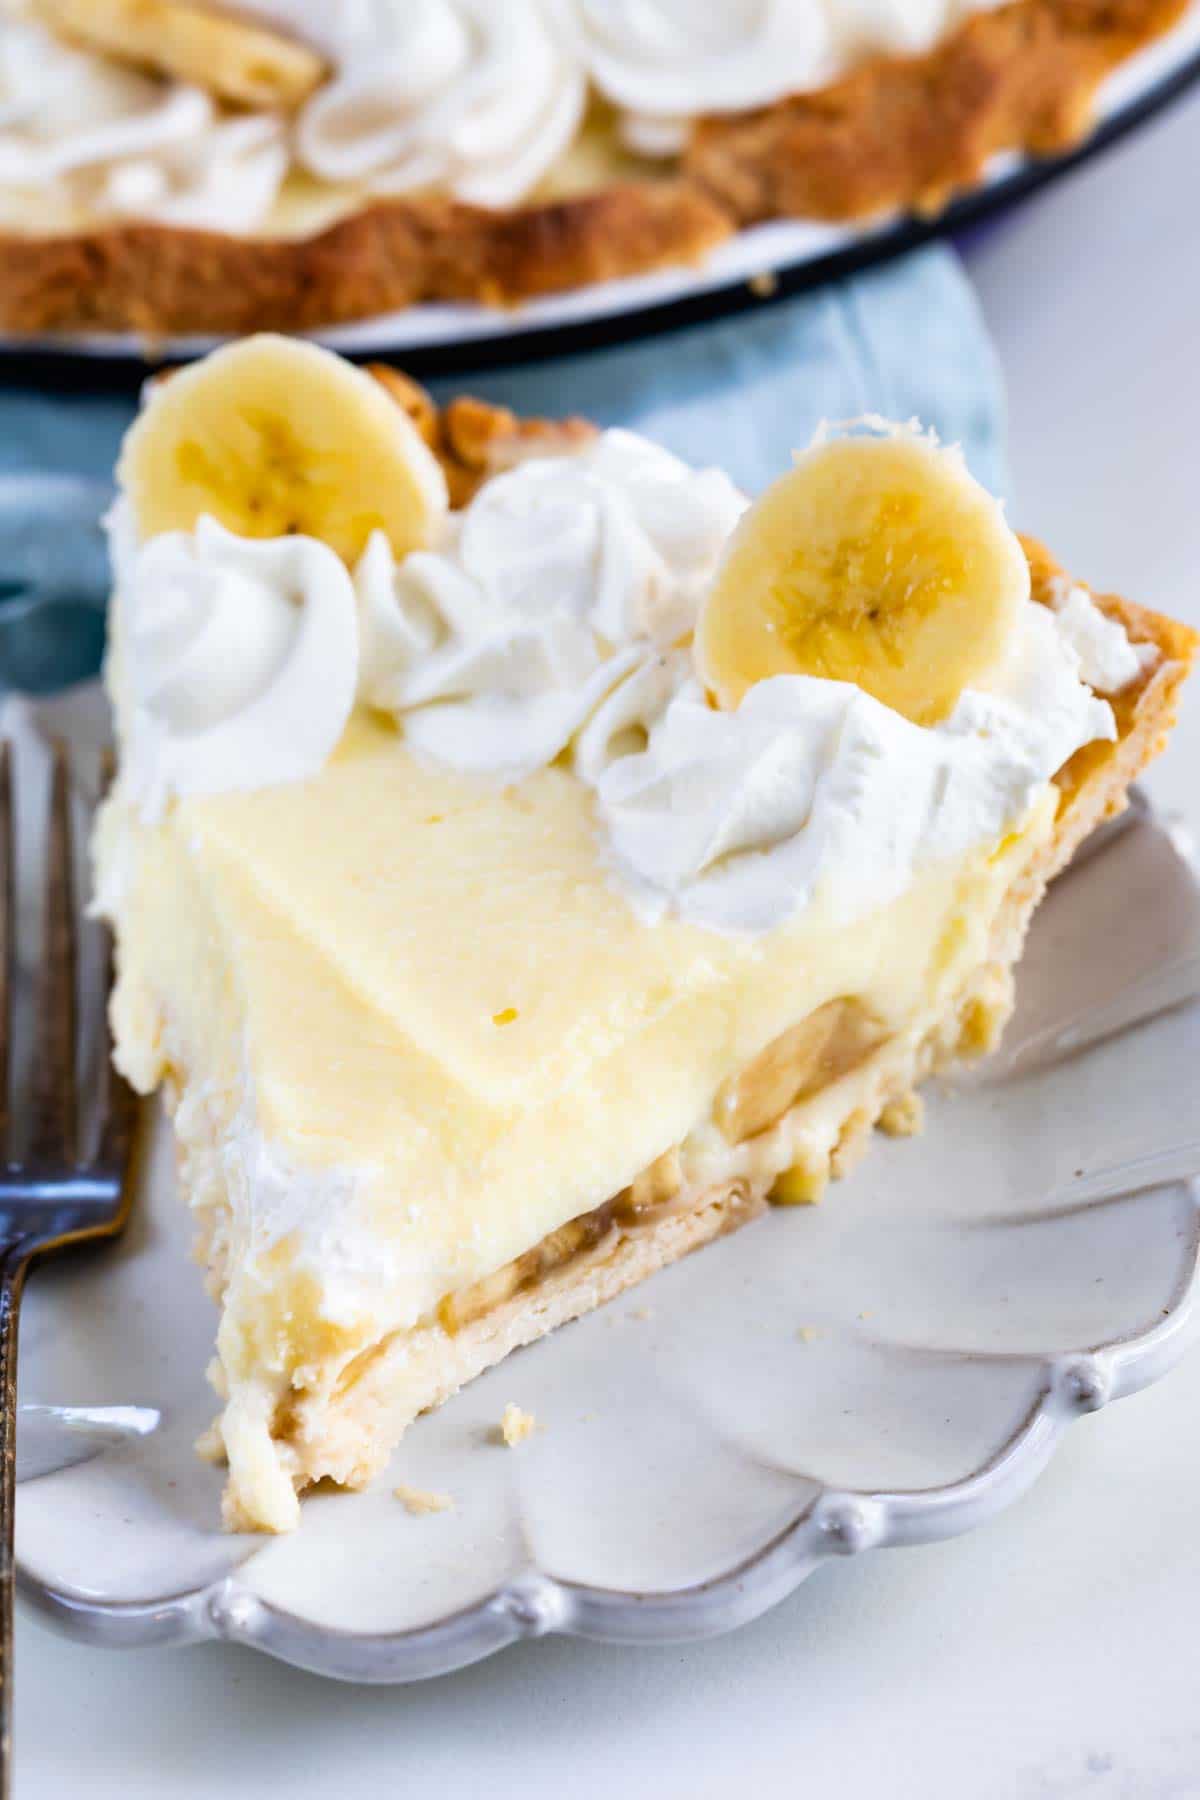 Banana Cream Pie Recipe from scratch - Crazy for Crust